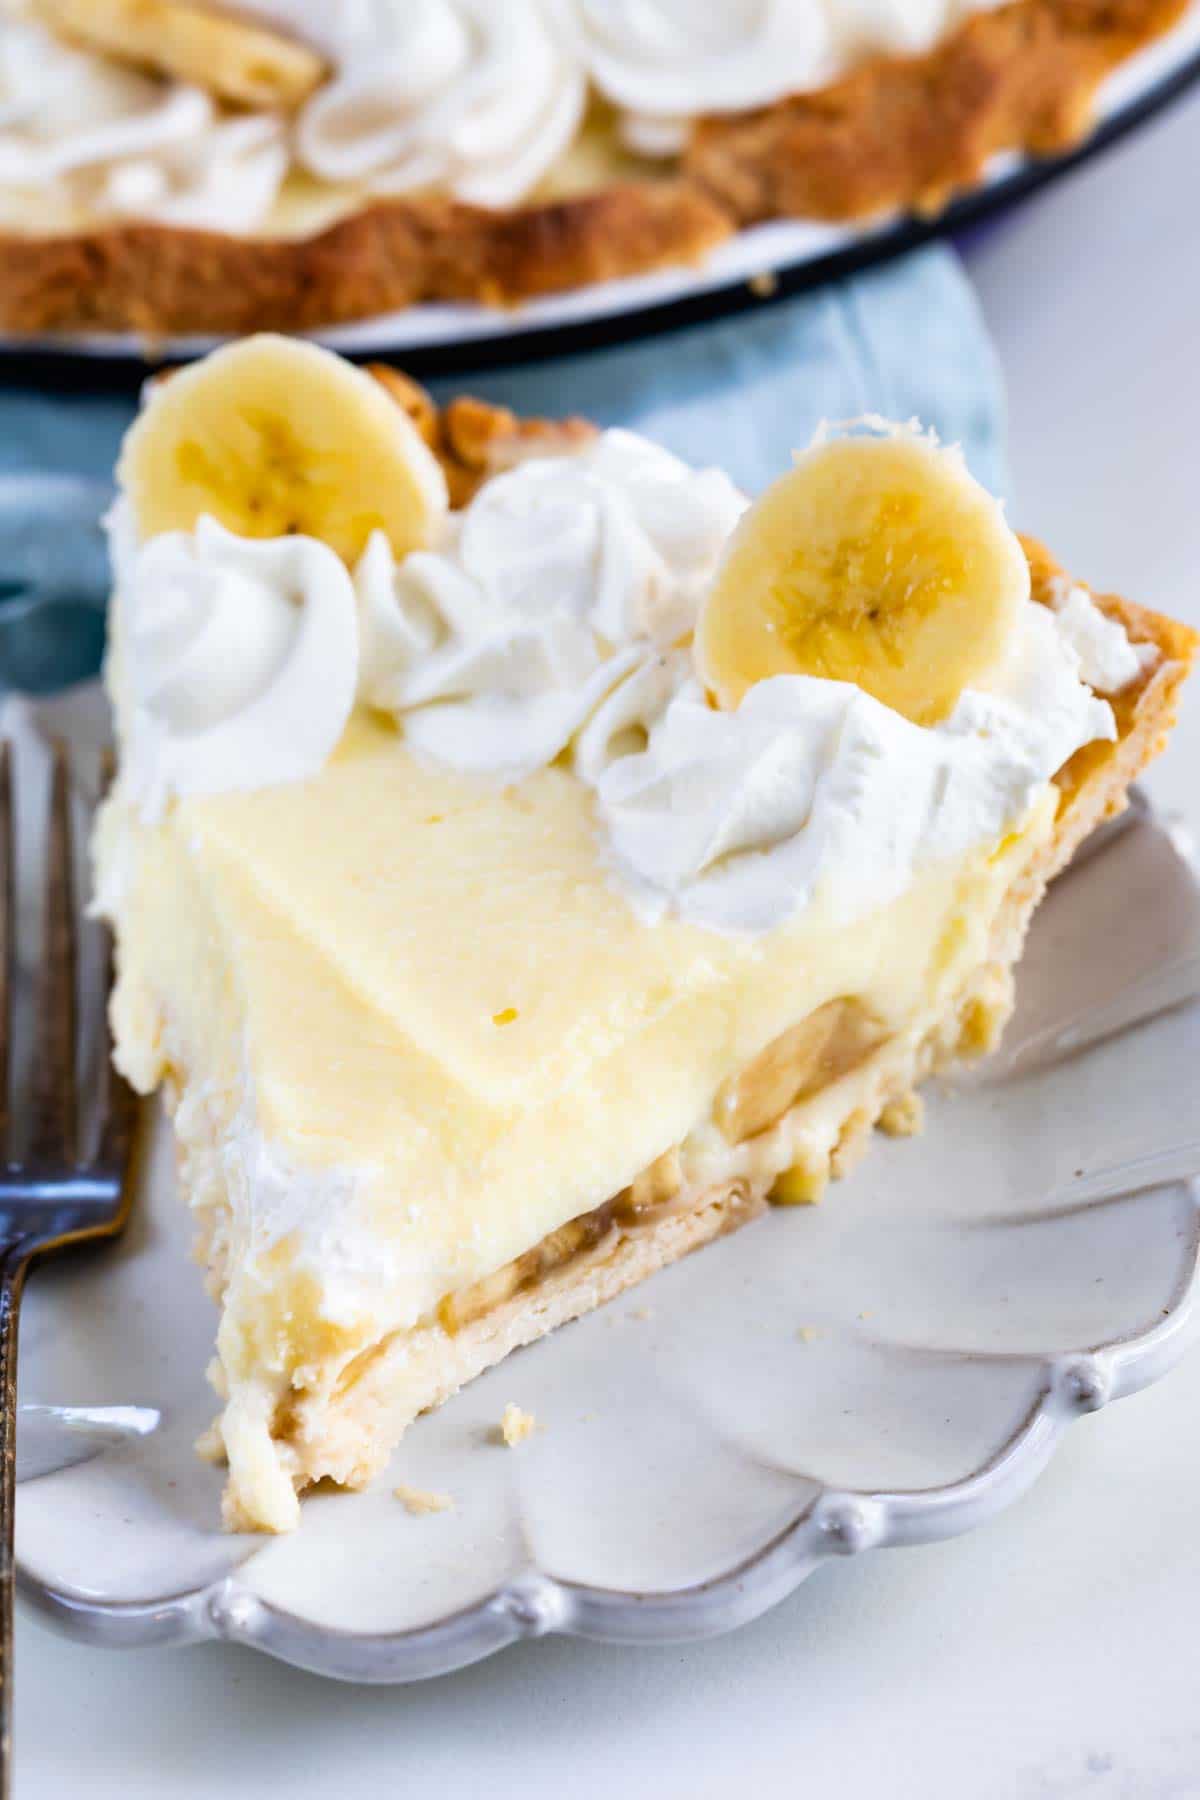 Banana Cream Pie Recipe from scratch - Crazy for Crust